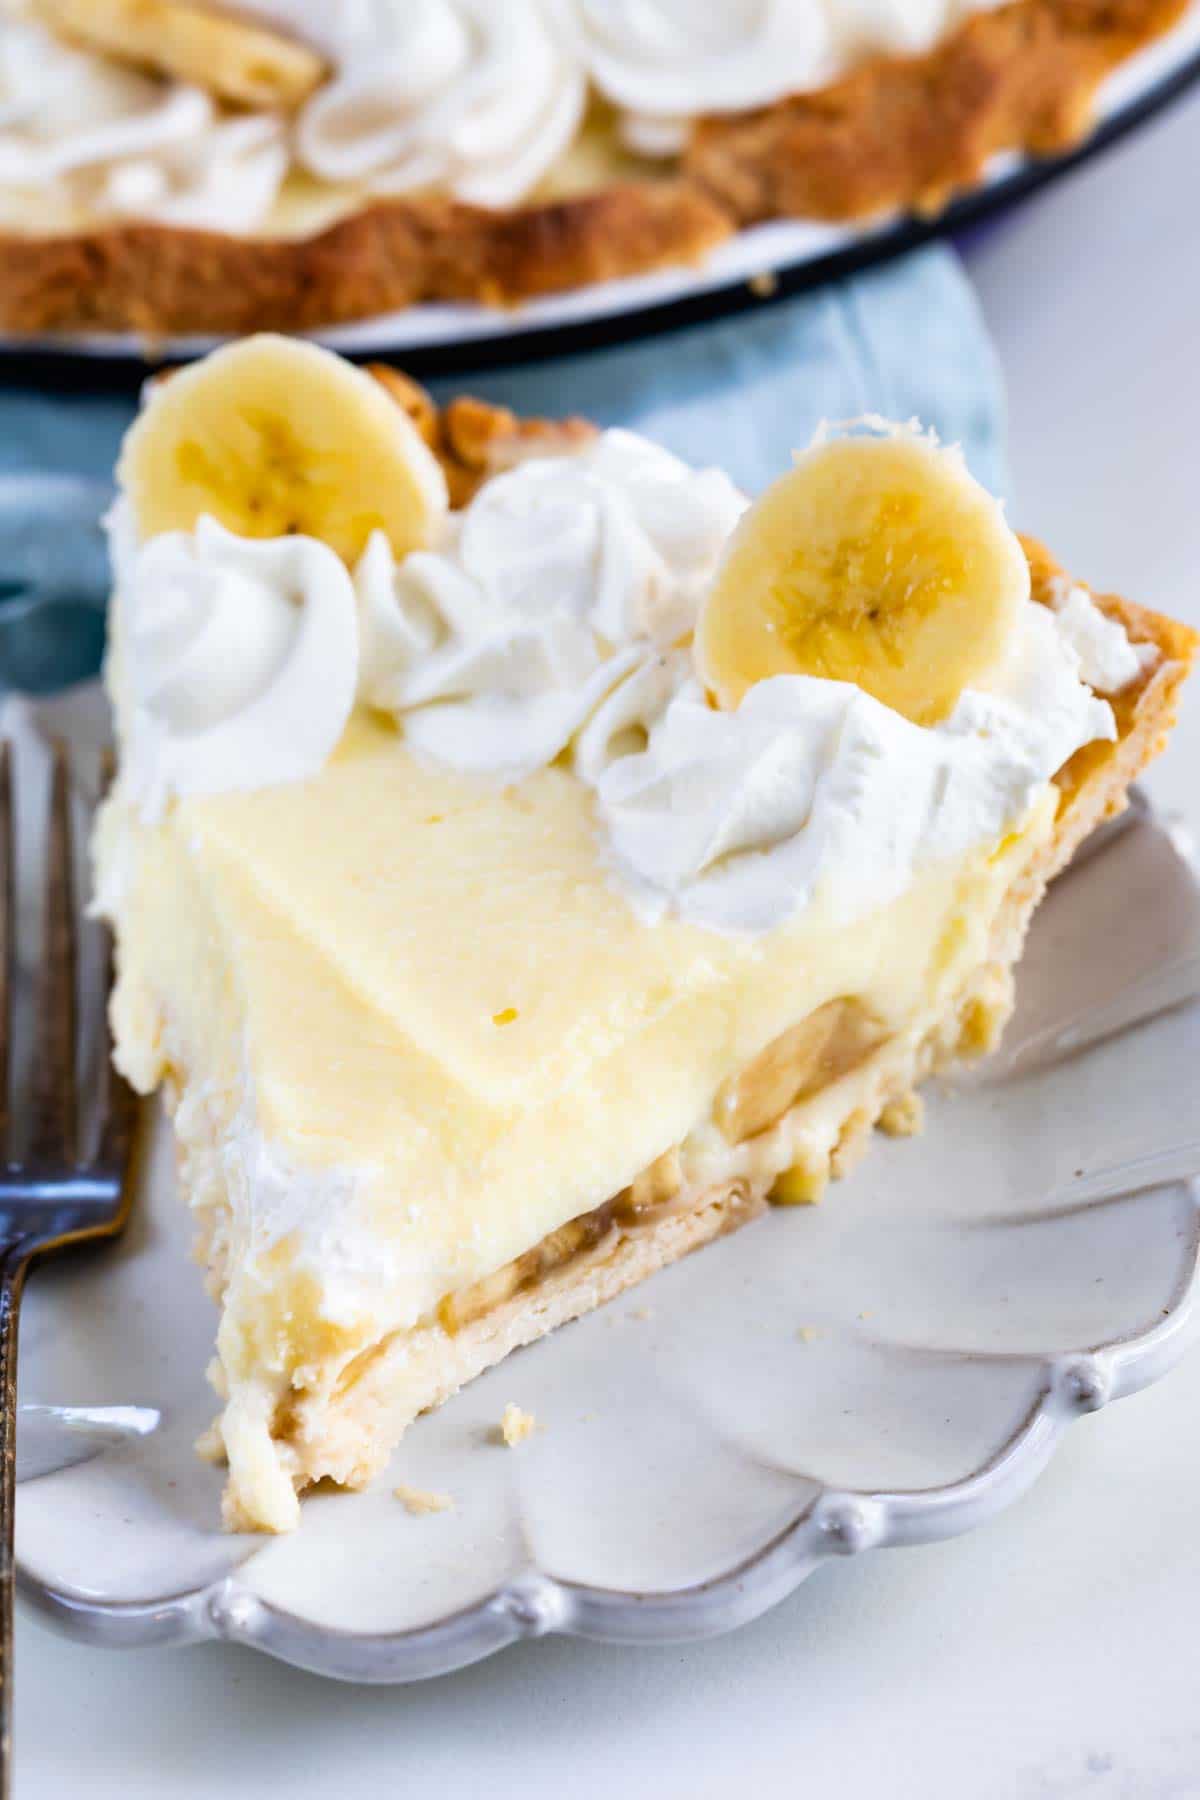 Banana Cream Pie Recipe from scratch - Crazy for Crust